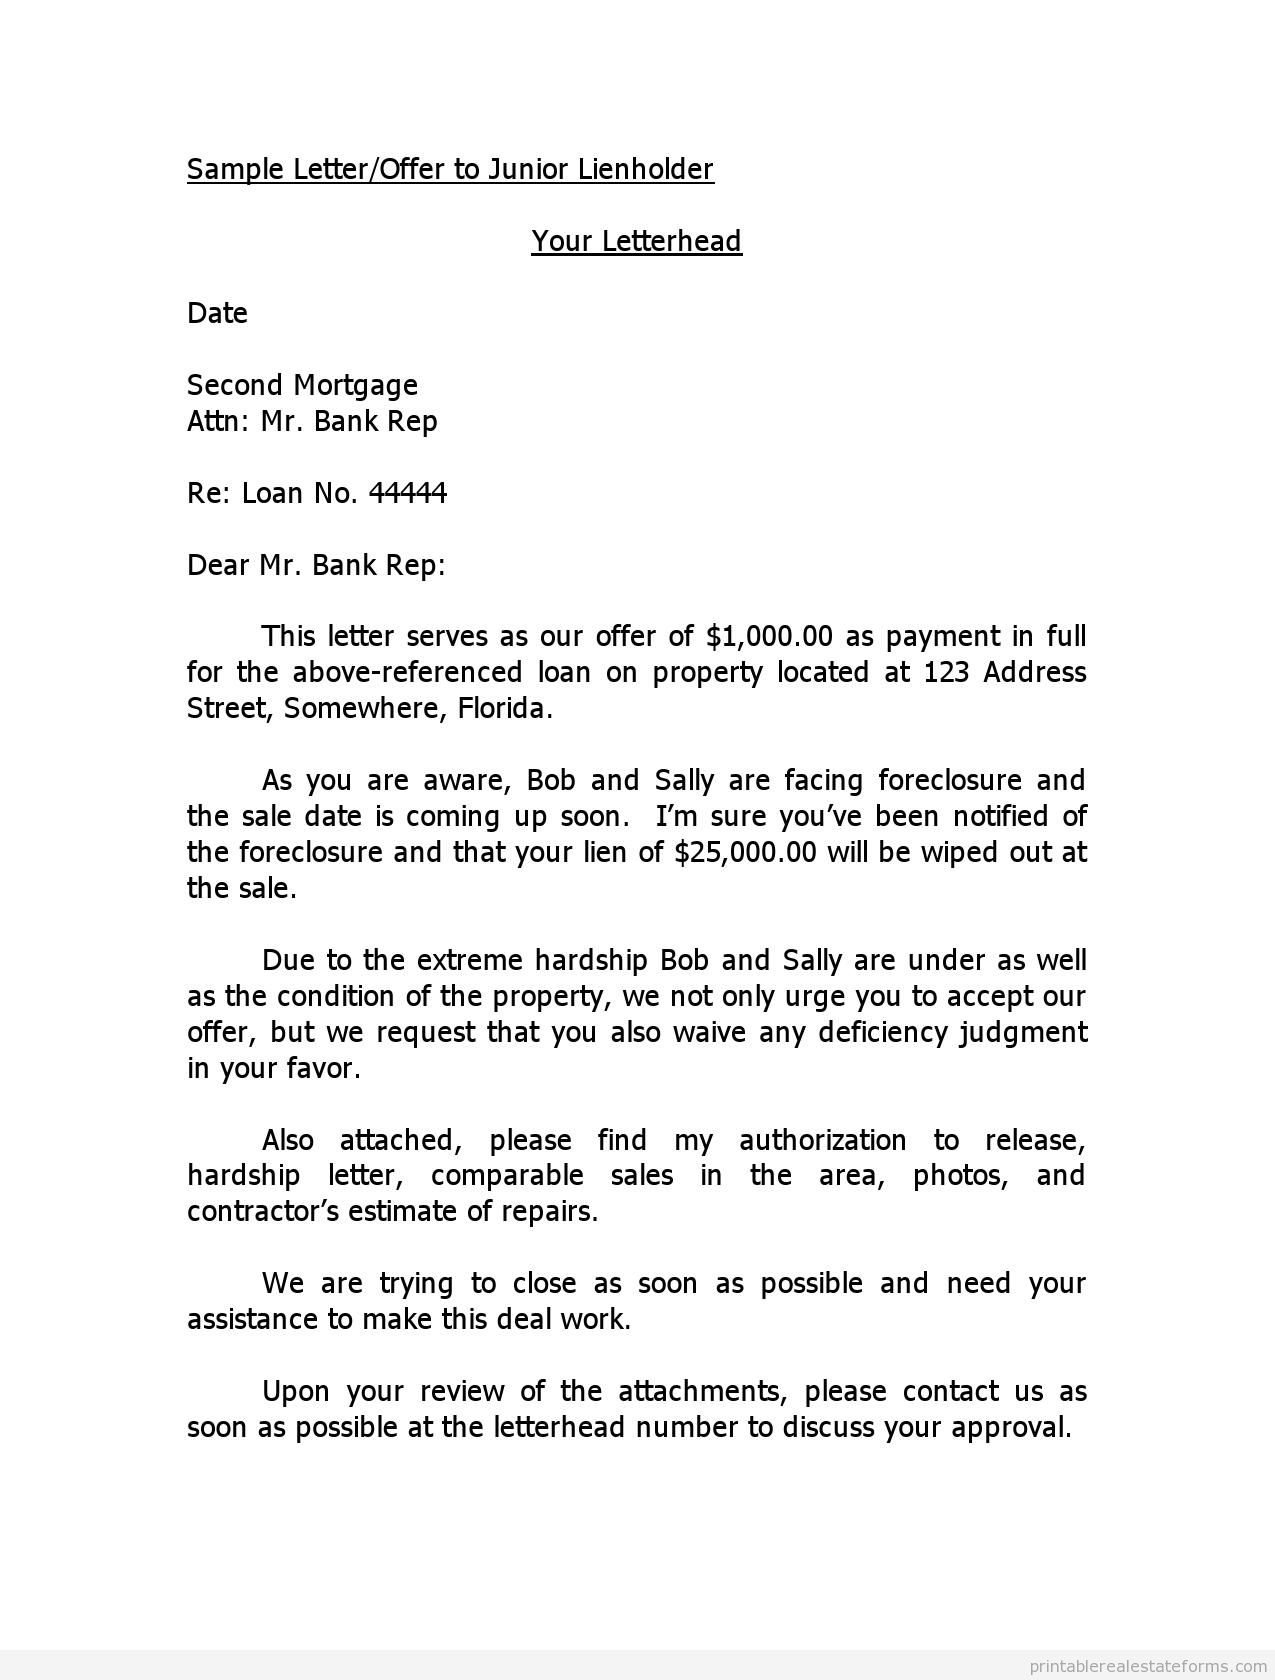 FREE Sample Letter Offer to Junior Lienholder FORM | Printable Real 